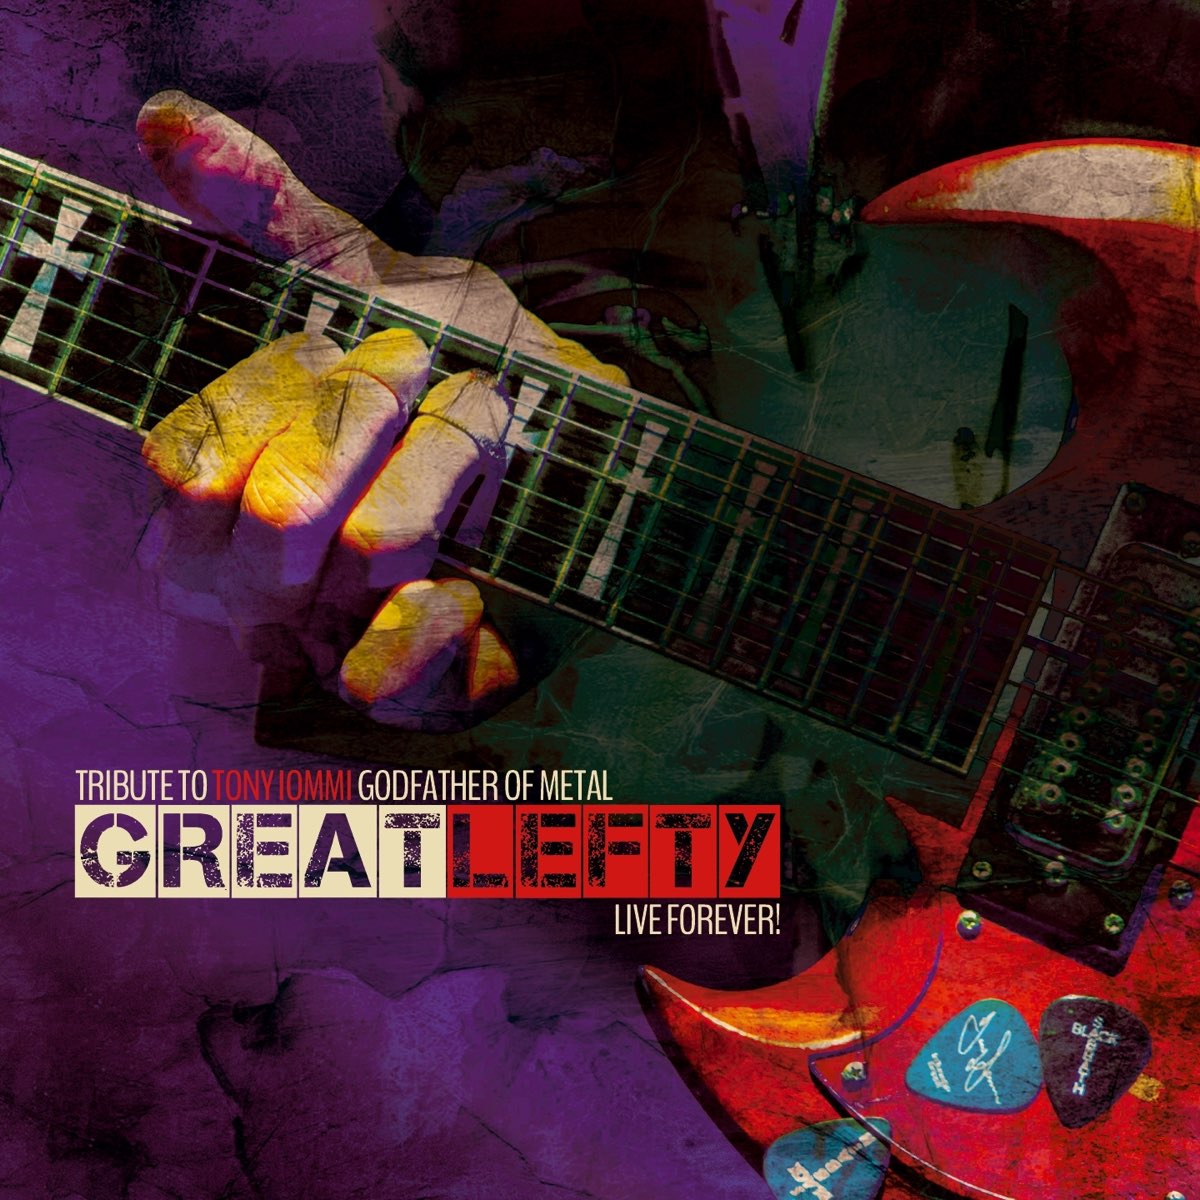 Years left to live. Tony Iommi обложки альбомов. Iommi (2000) album. Tribute альбом. Metal great.